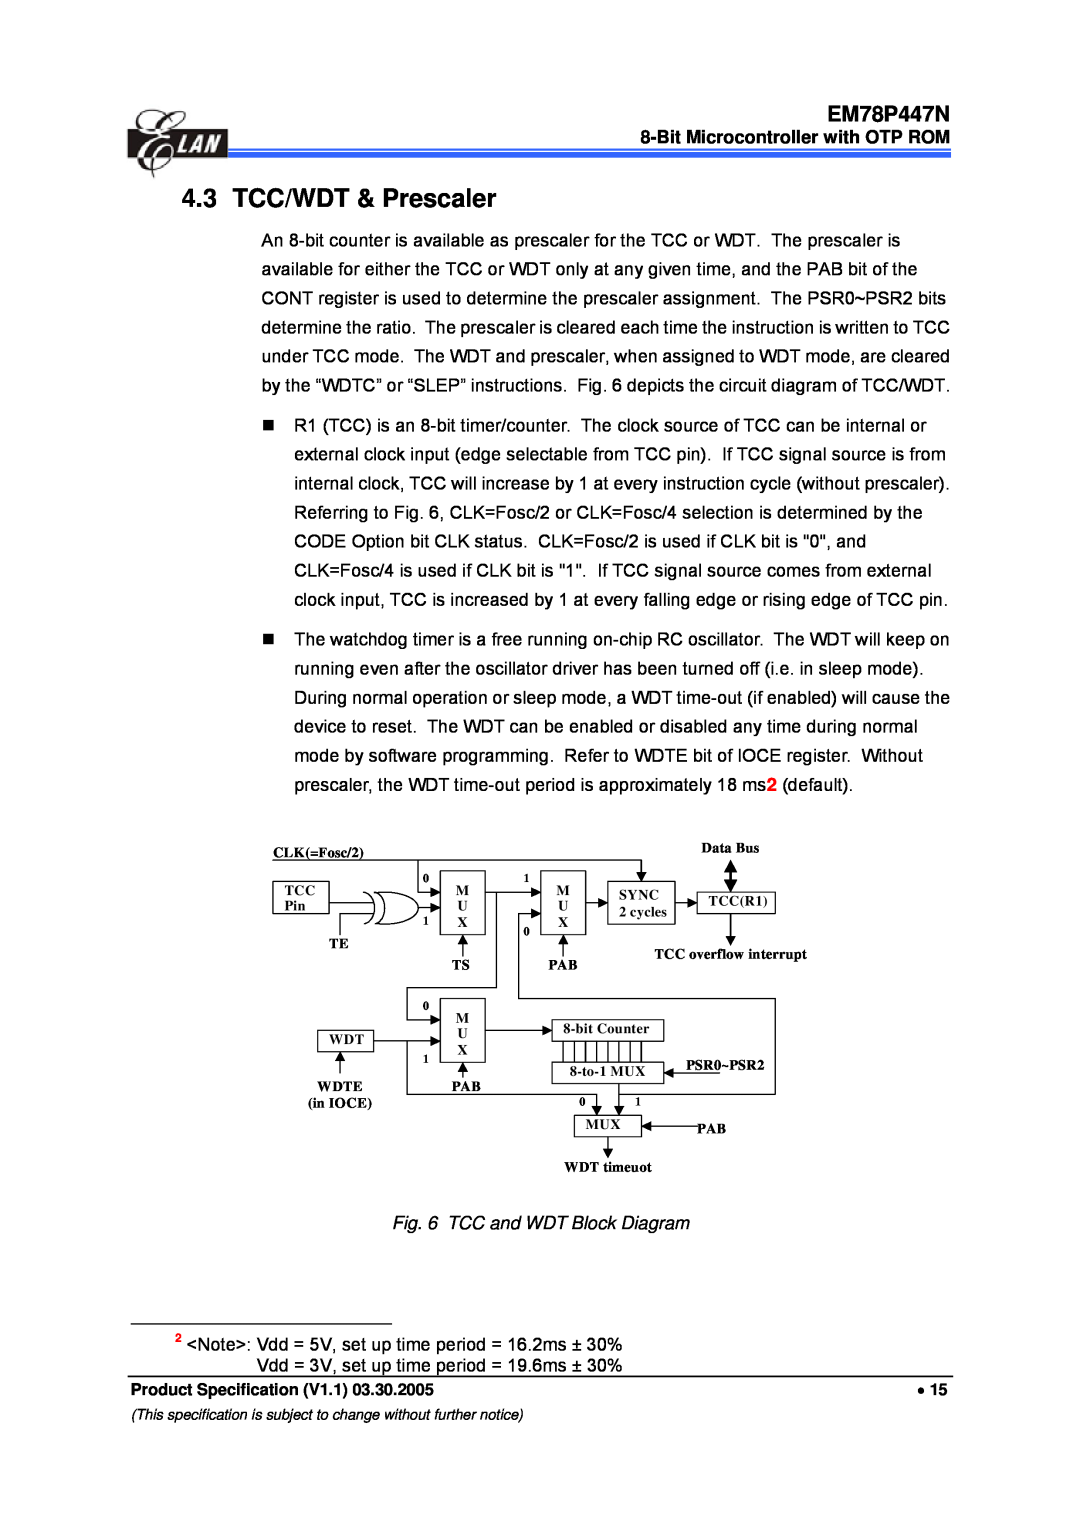 IBM EM78P447N manual 4.3 TCC/WDT & Prescaler, TCC and WDT Block Diagram 